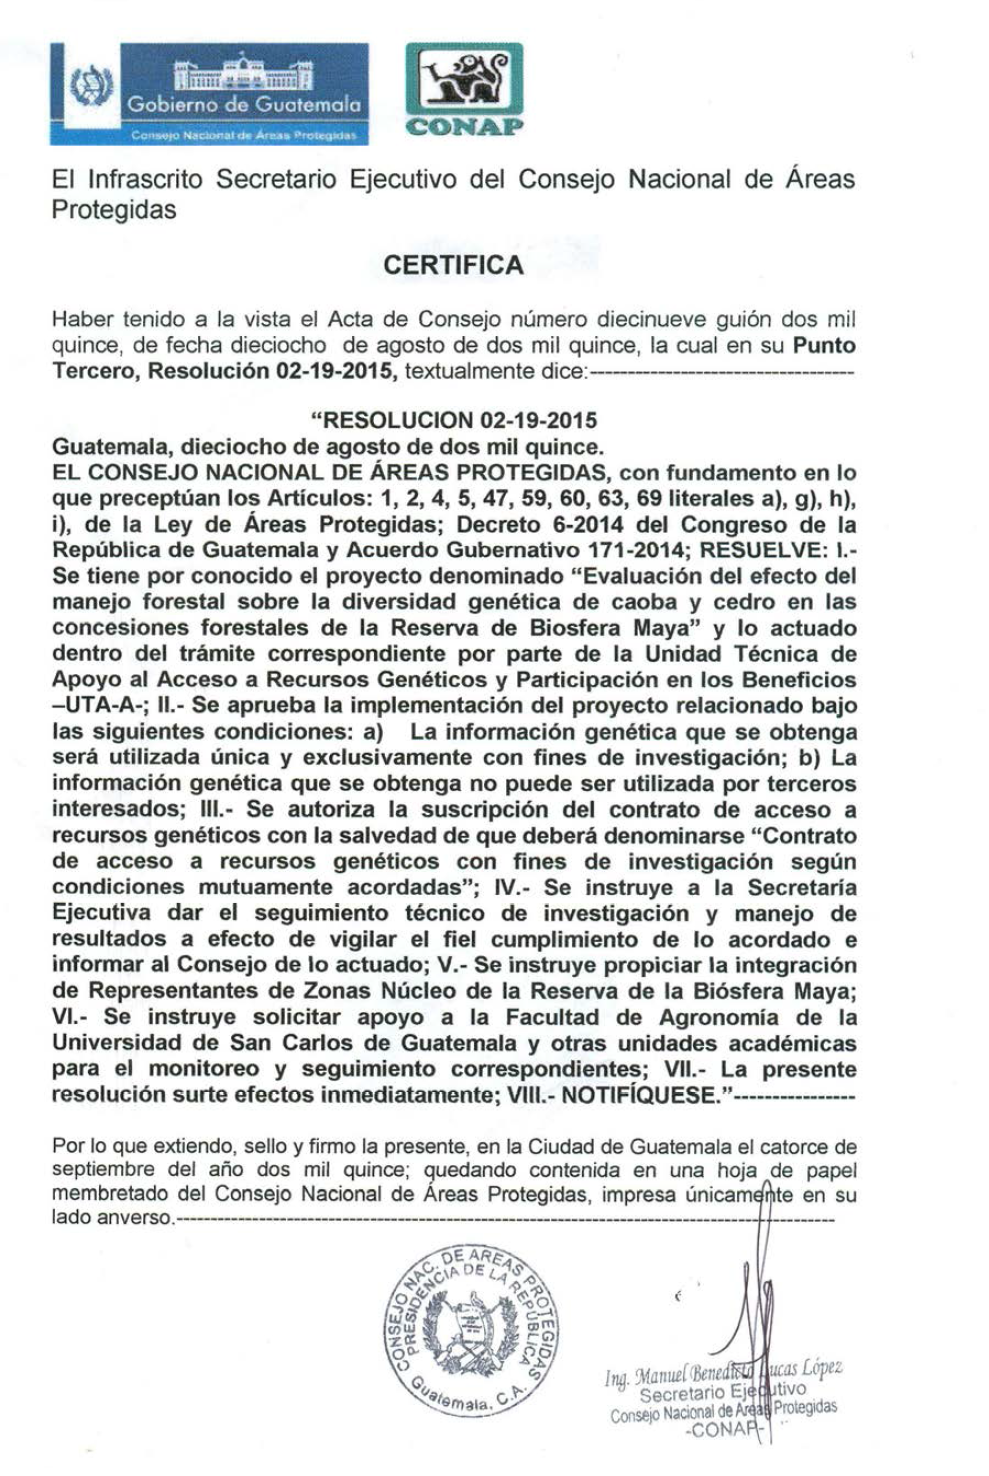 과테말라 정부의 유전자원 접근 승인 결정